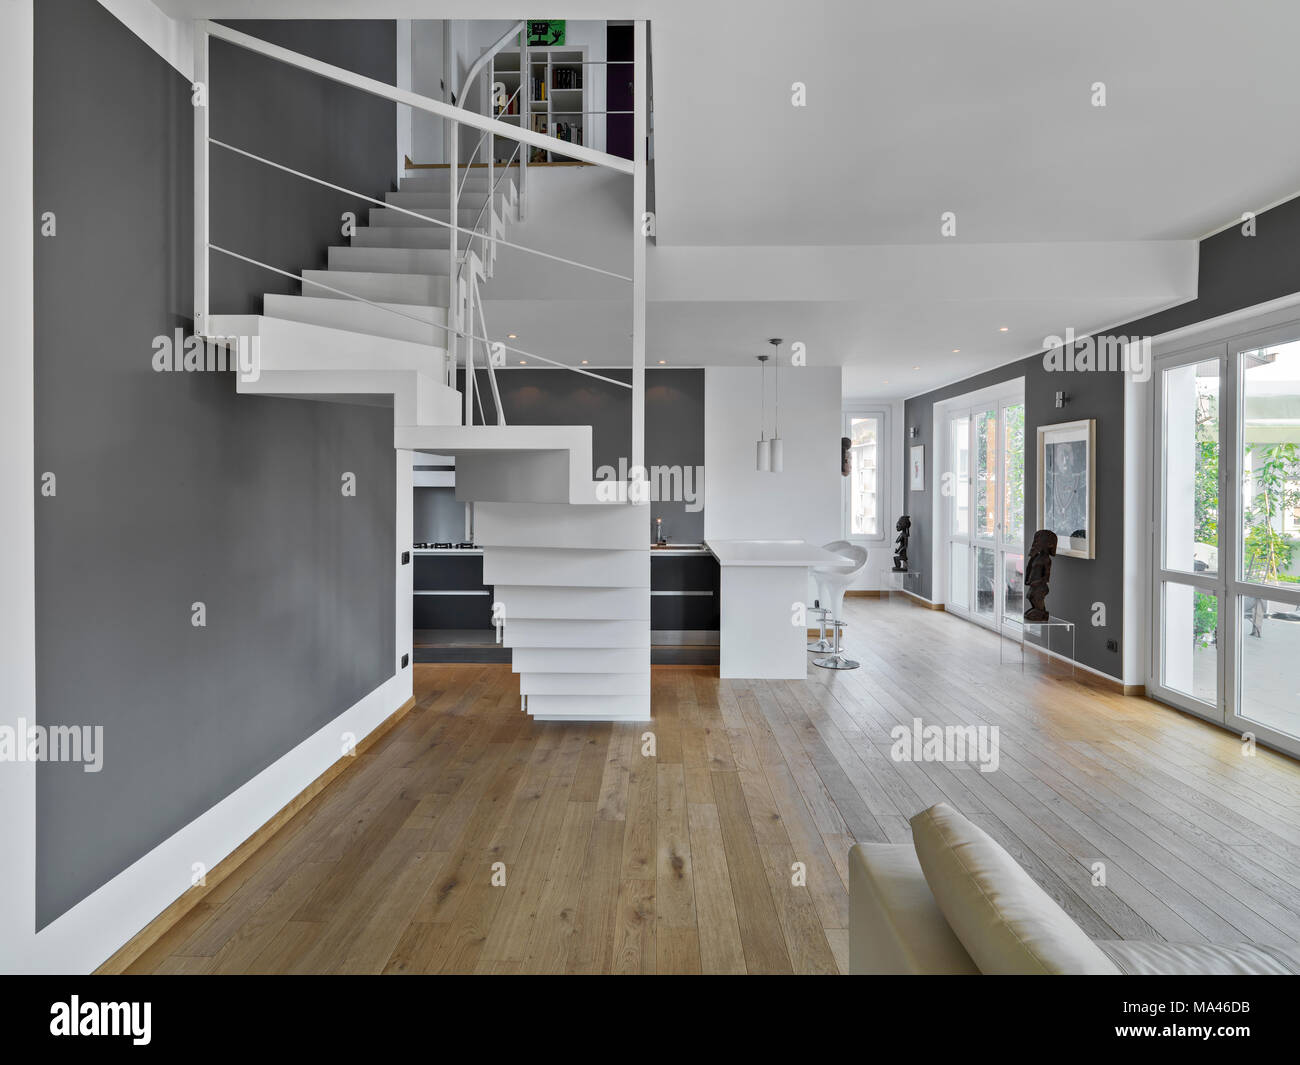 Scatti di interni di un moderno appartamento in primo piano la scala in ferro sullo sfondo la cucina mentre il pavimento è in legno Foto Stock